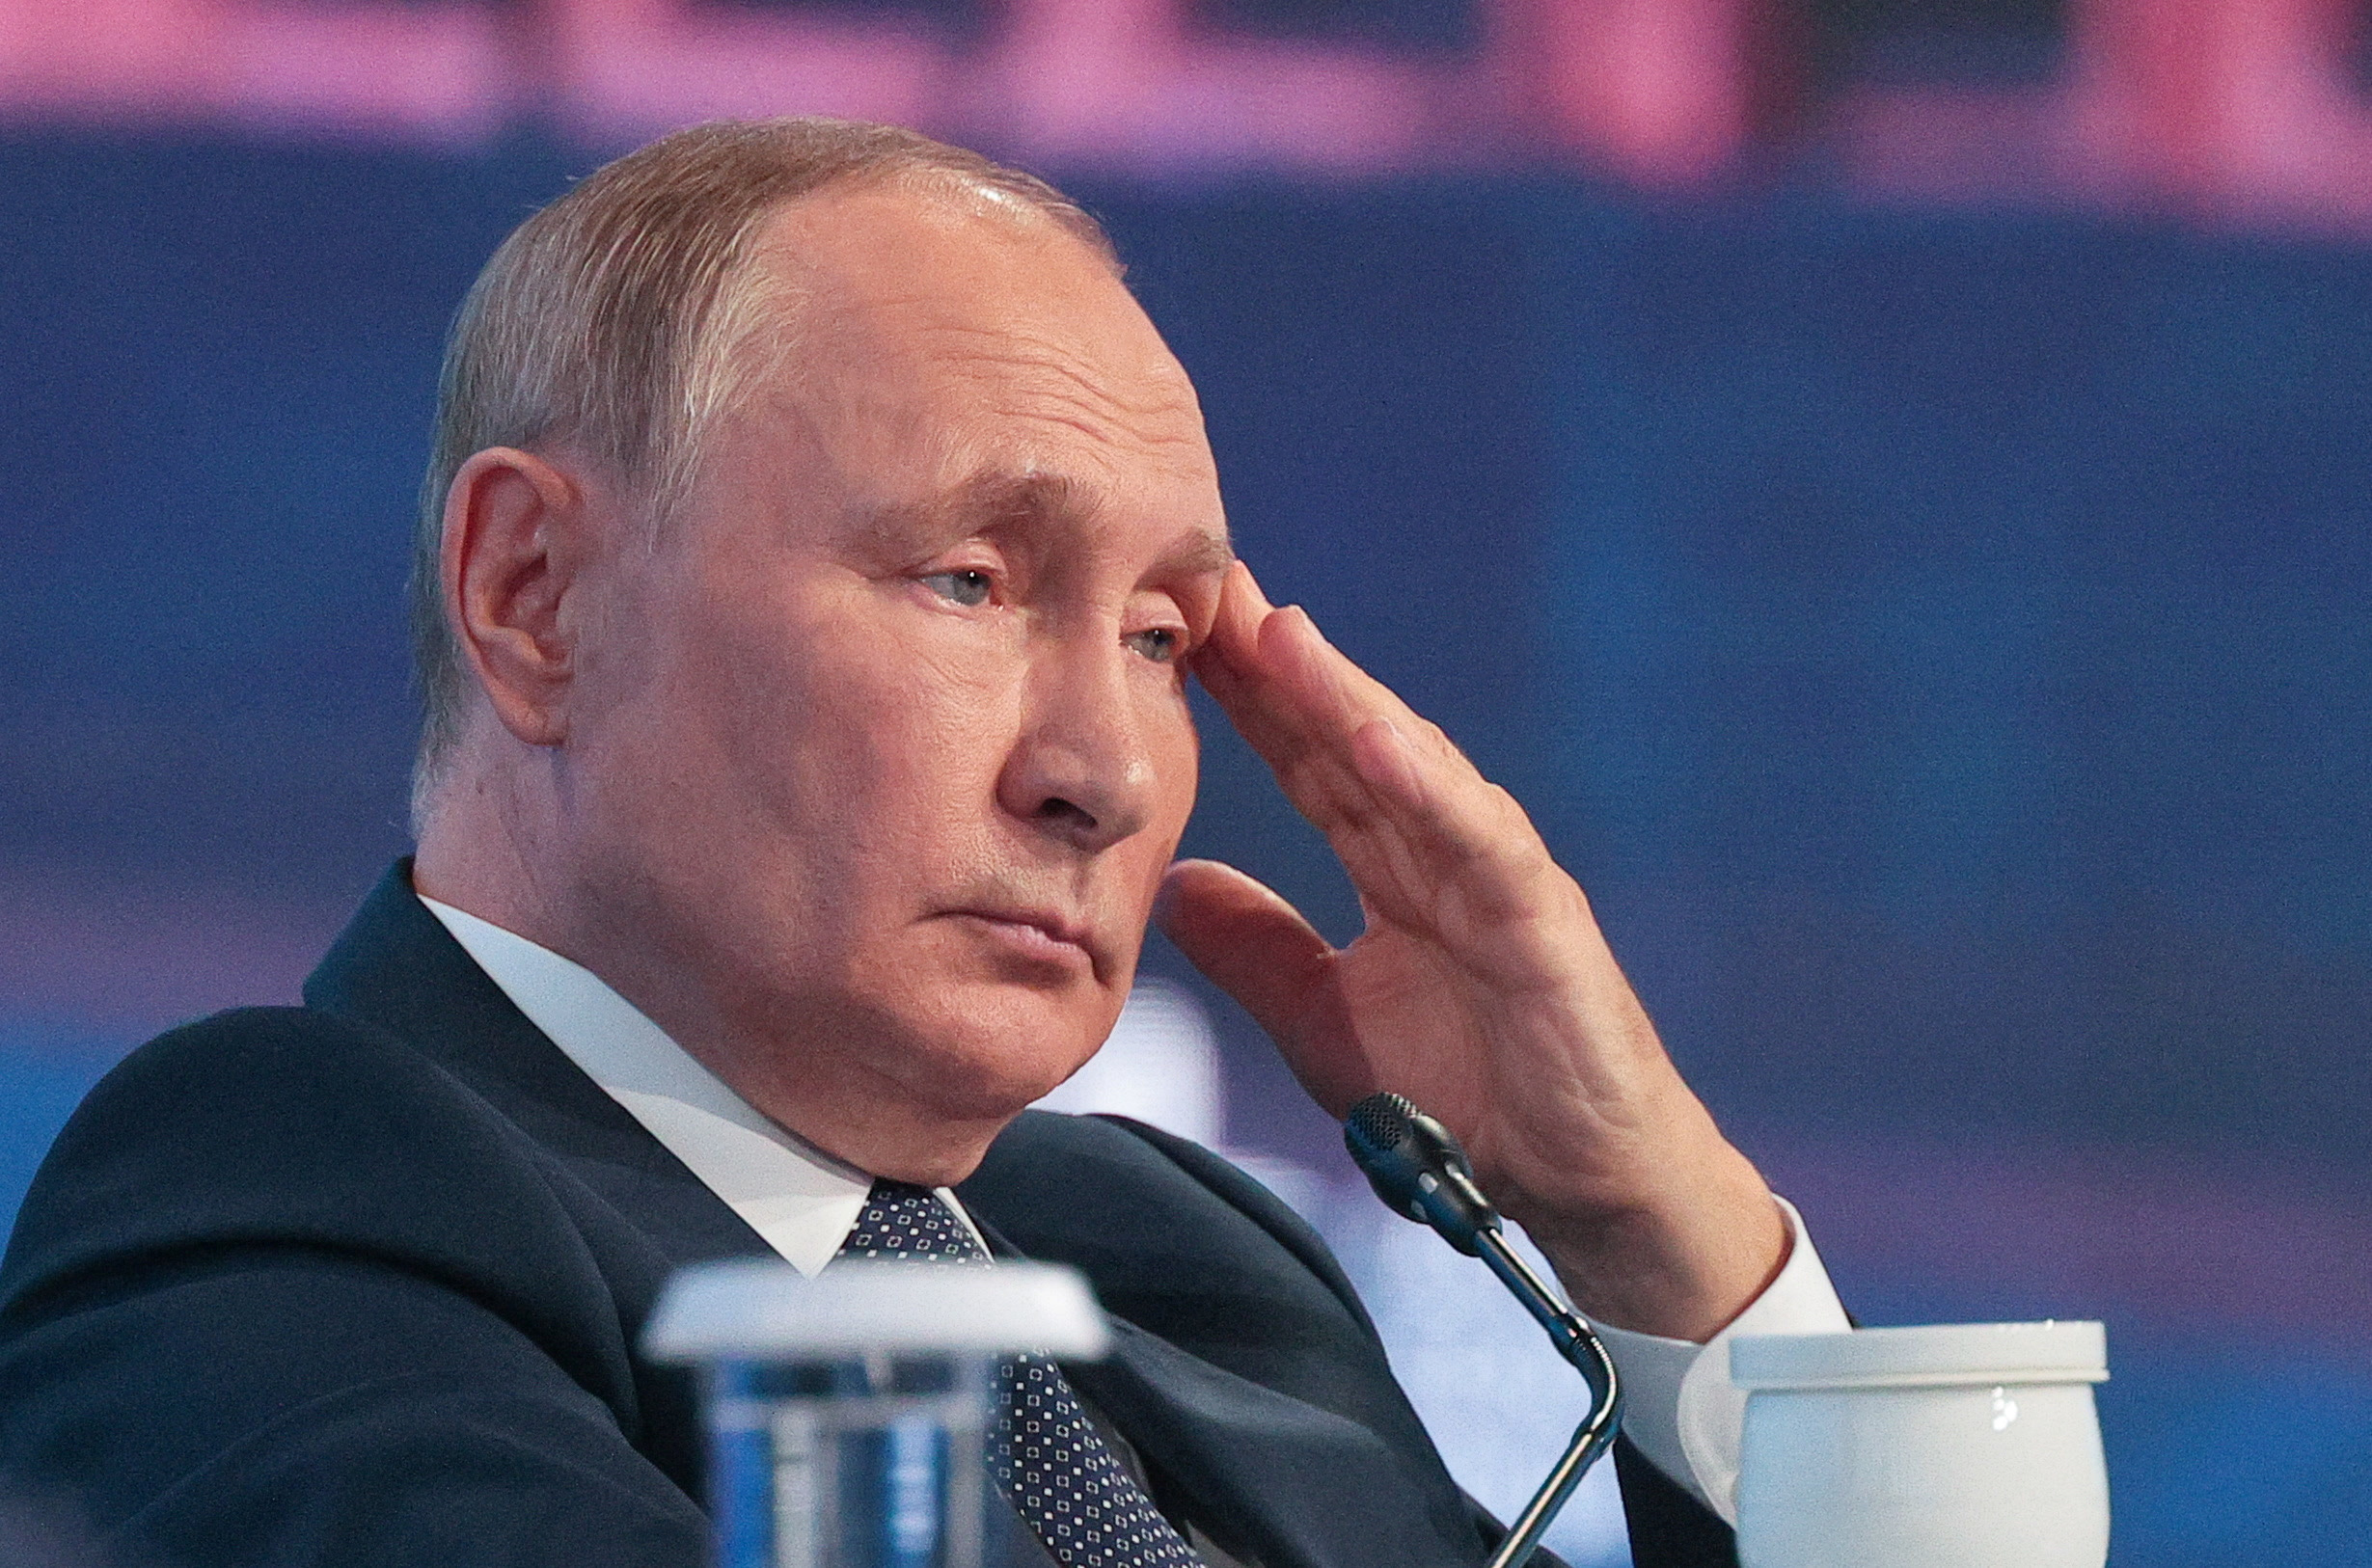 El jefe de estado ruso, Vladimir Putin, durante un foro en Vladivostok, Rusia hace unos días. El hombre fuerte del Kremlin enfrenta momentos de suma tensión interna por la humillación que sufre frente a las tropas ucranianas (Reuters)